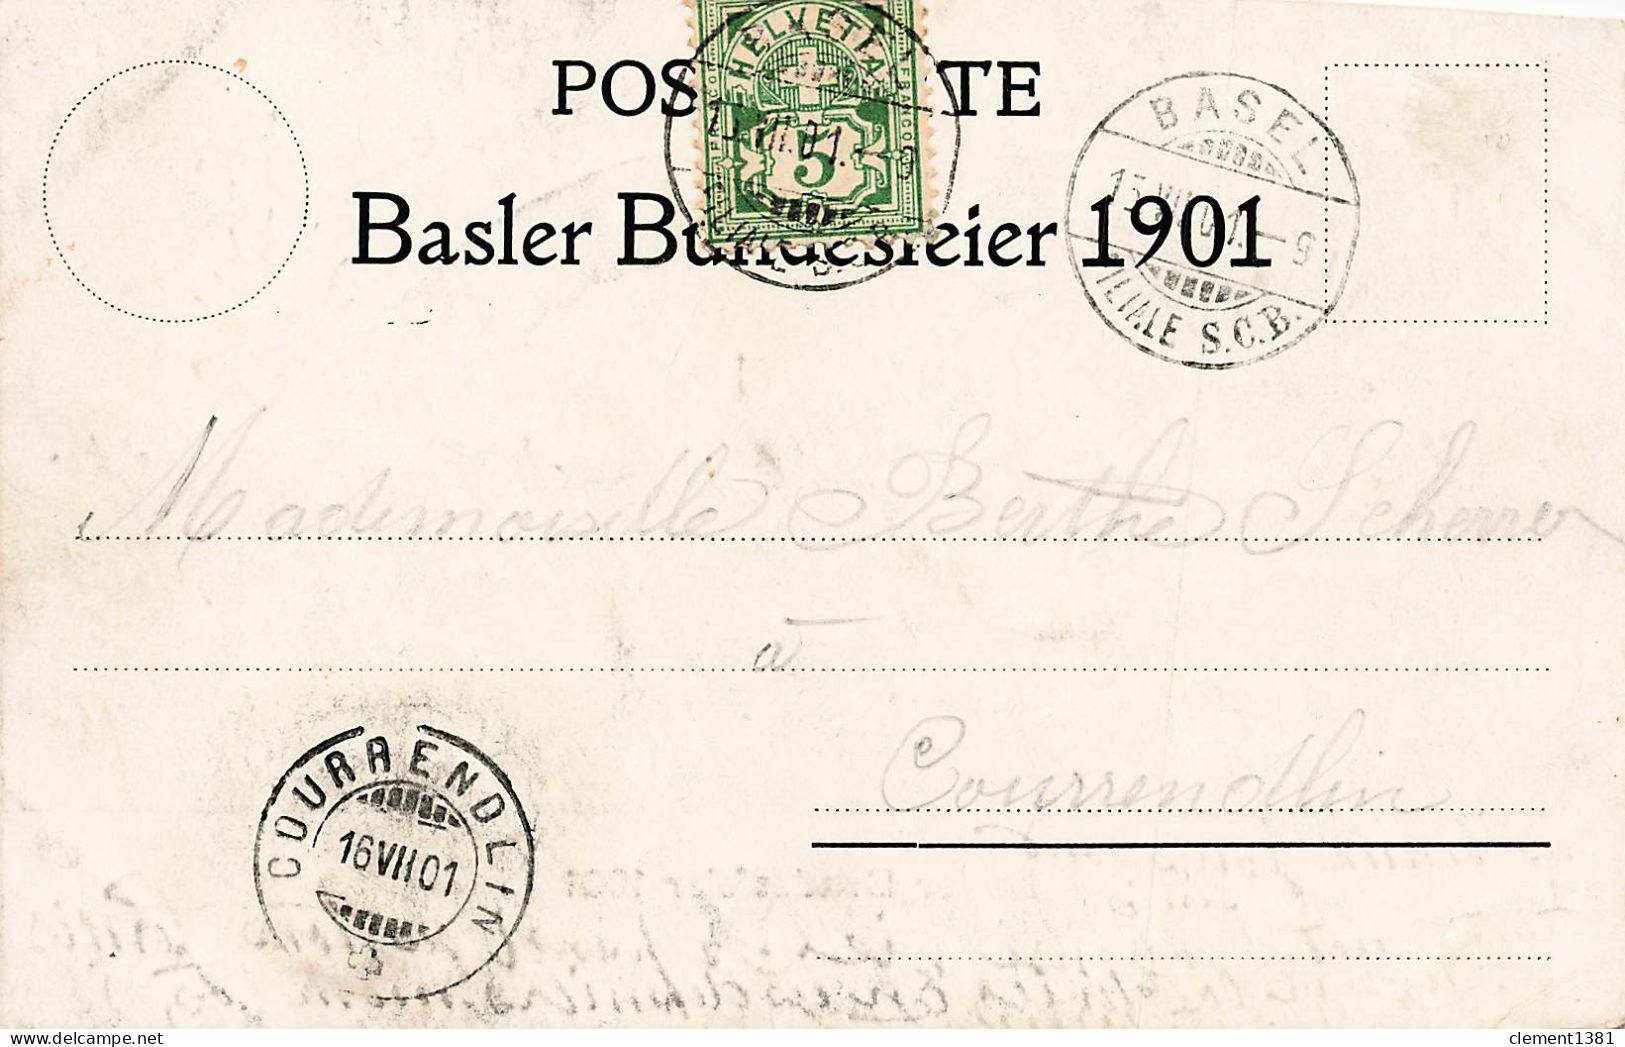 Basler Bundesfeier 1901 - Bâle